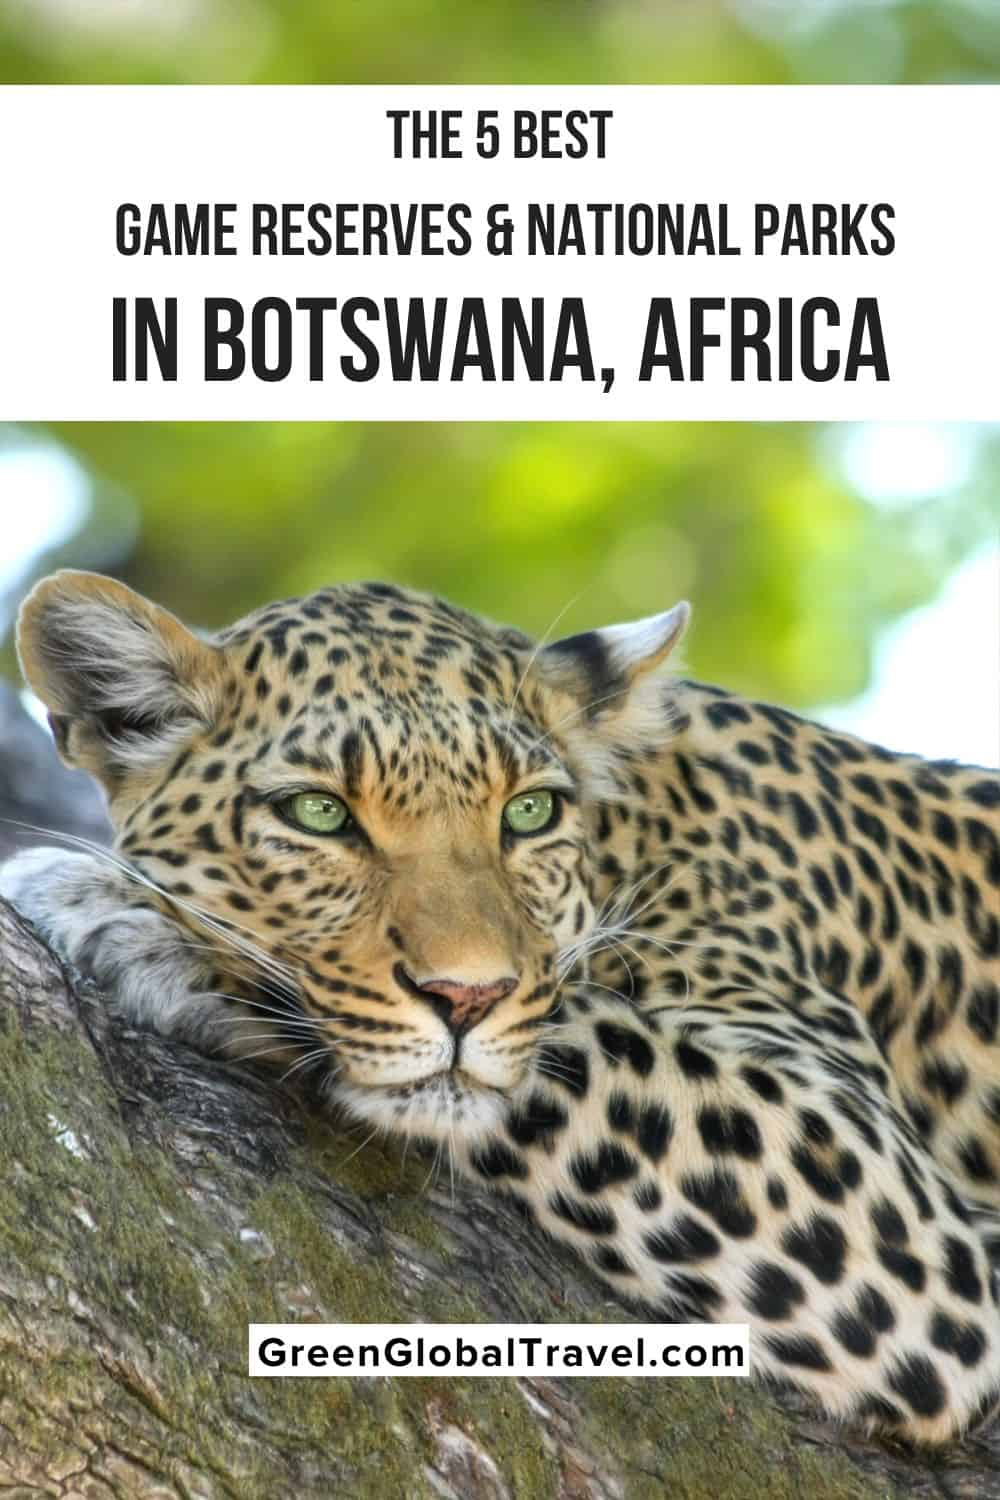 Vea por qué la conservación de la vida silvestre de Botswana es un éxito y las mejores reservas de caza y parques nacionales en Botswana para visitar.  |:  animales botsuana |:  animales en botsuana  Animales de Botswana |  fauna en botswana fauna en botswana |:  Lugares de interés de Botswana |  mejores safaris en botswana |:  animales kalahari |:  safari africano en botswana |:  Safari de vida silvestre en Botswana |  safari de vida silvestre en botswana | safaris de vida silvestre en botswana